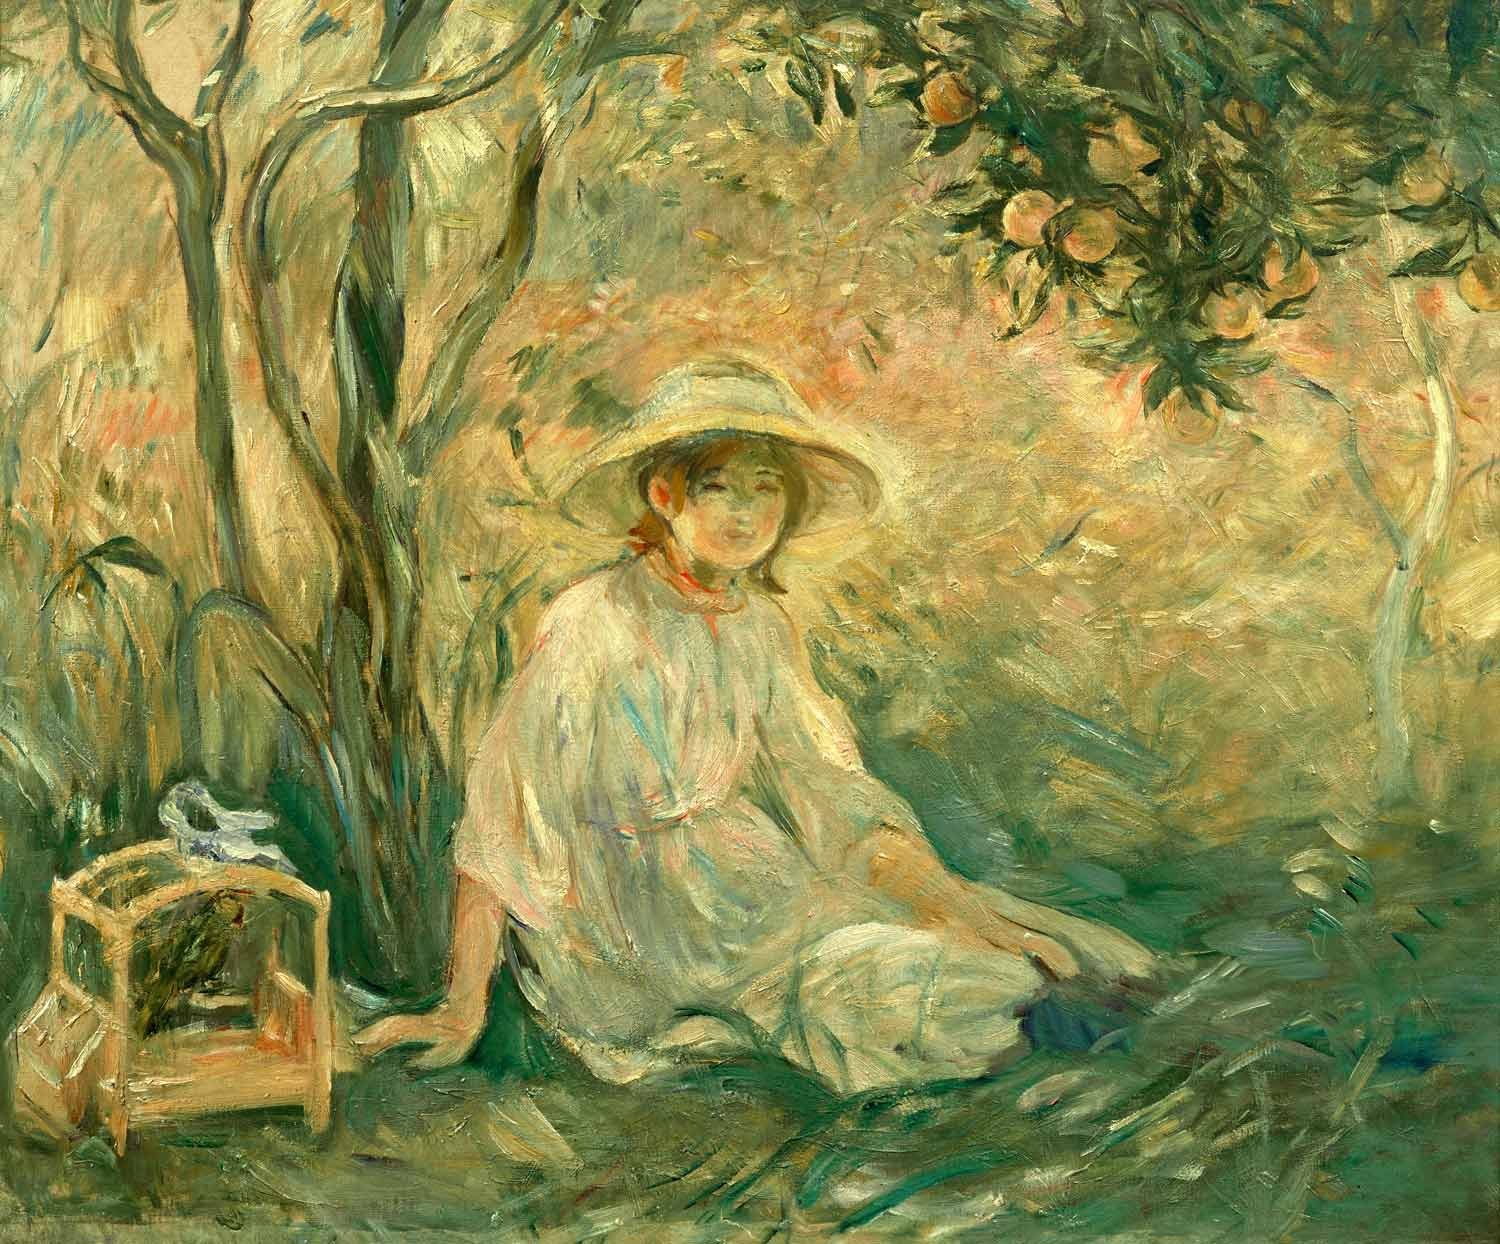 Sotto l'arancio by Berthe Morisot - 1889 - 73.03 x 84.77 cm 